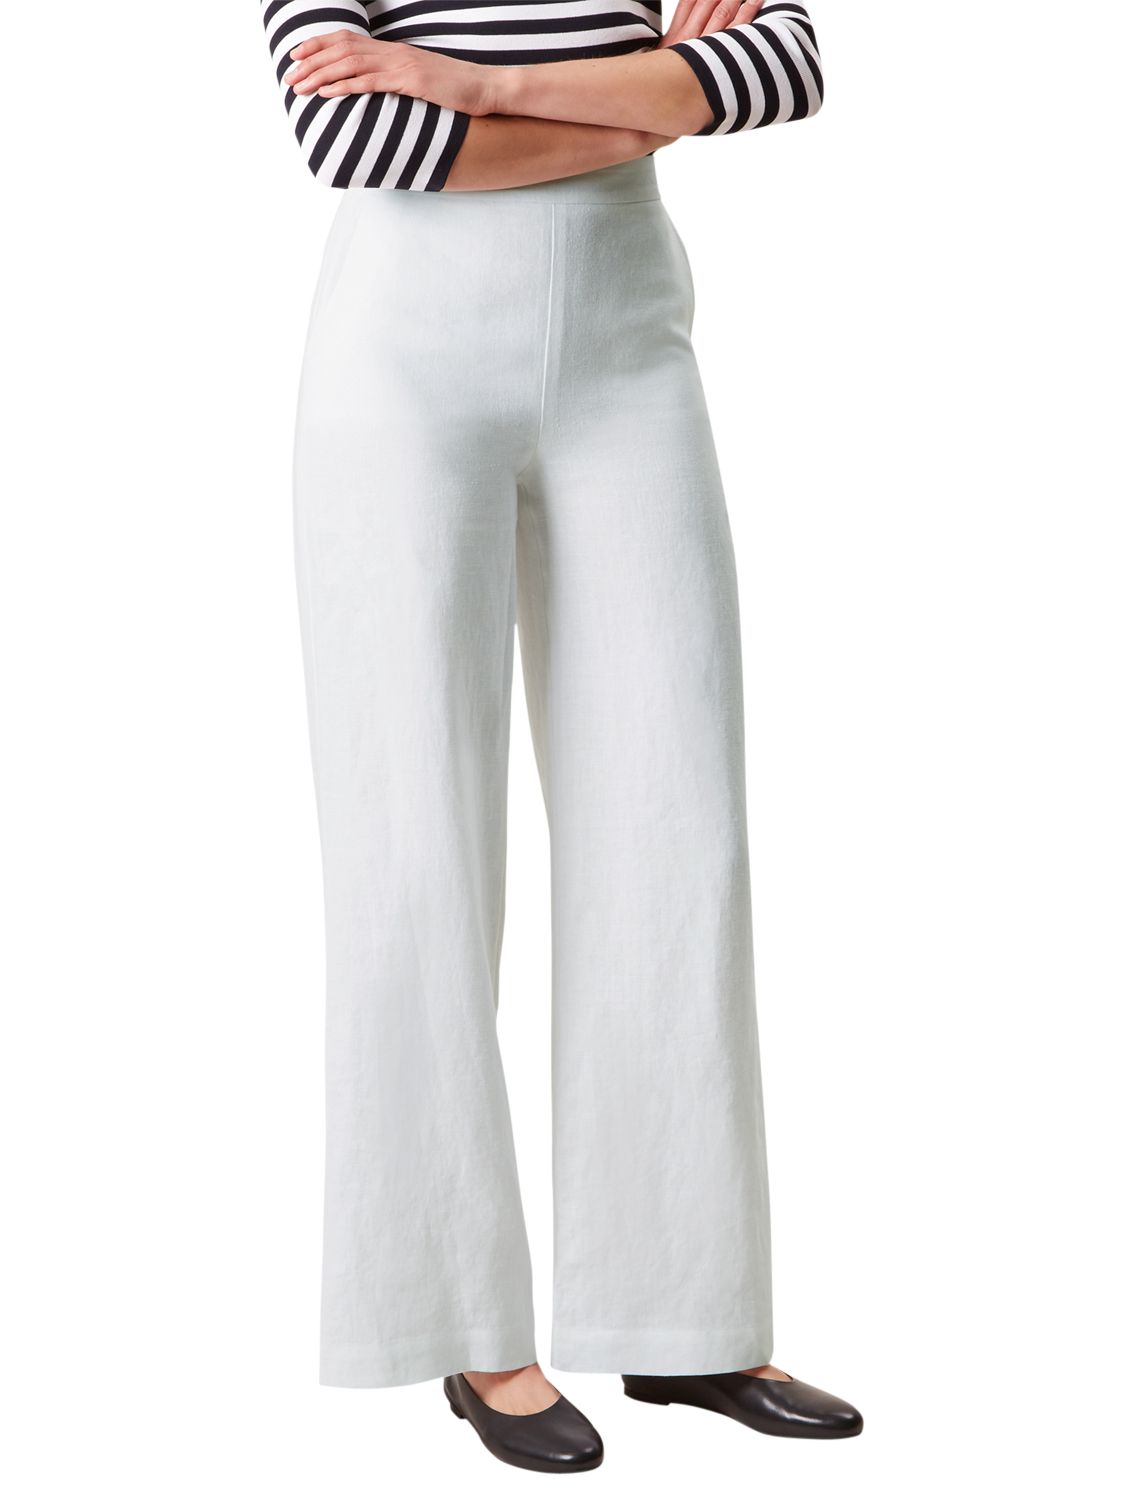 Hobbs Anise Linen Trousers, White, 14